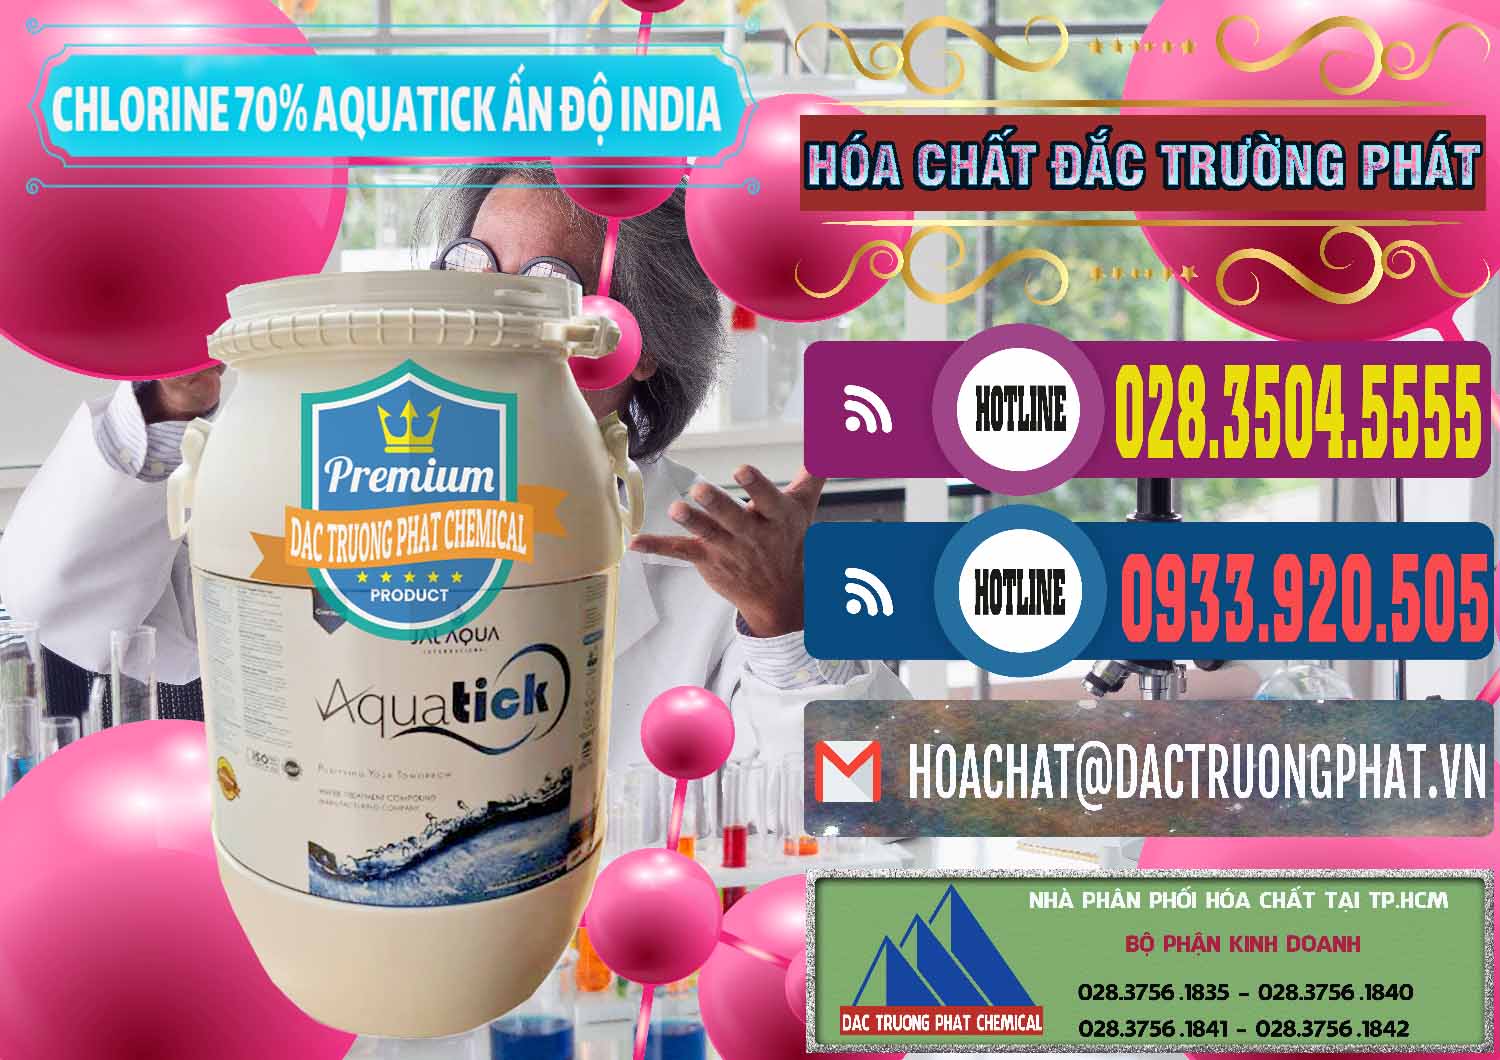 Công ty bán ( cung cấp ) Chlorine – Clorin 70% Aquatick Jal Aqua Ấn Độ India - 0215 - Cty phân phối và cung cấp hóa chất tại TP.HCM - muabanhoachat.com.vn